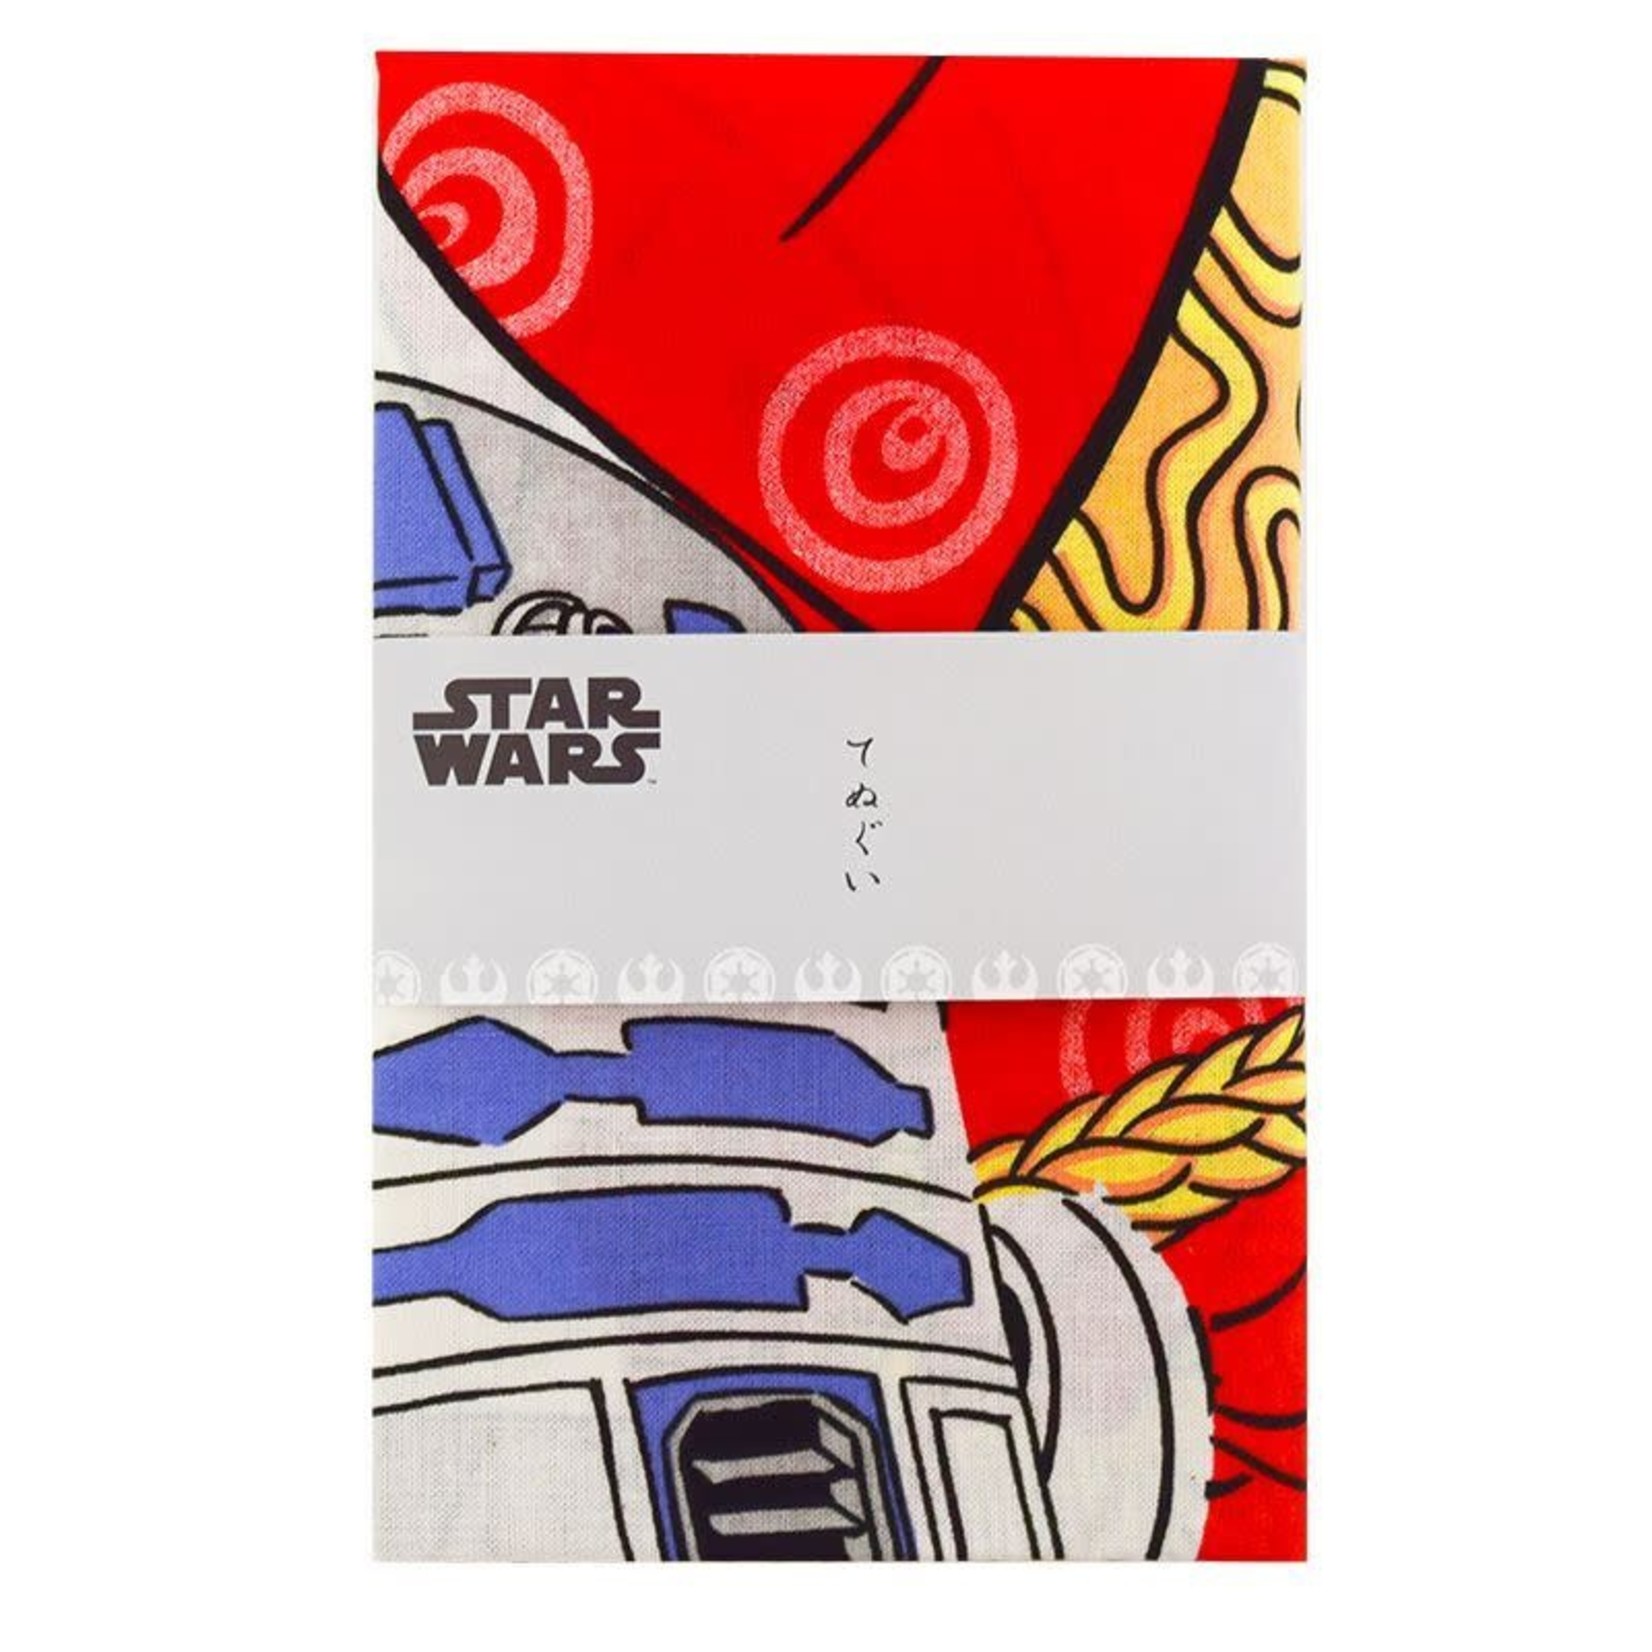 Star Wars - Amidala and R2-D2 Tenugui